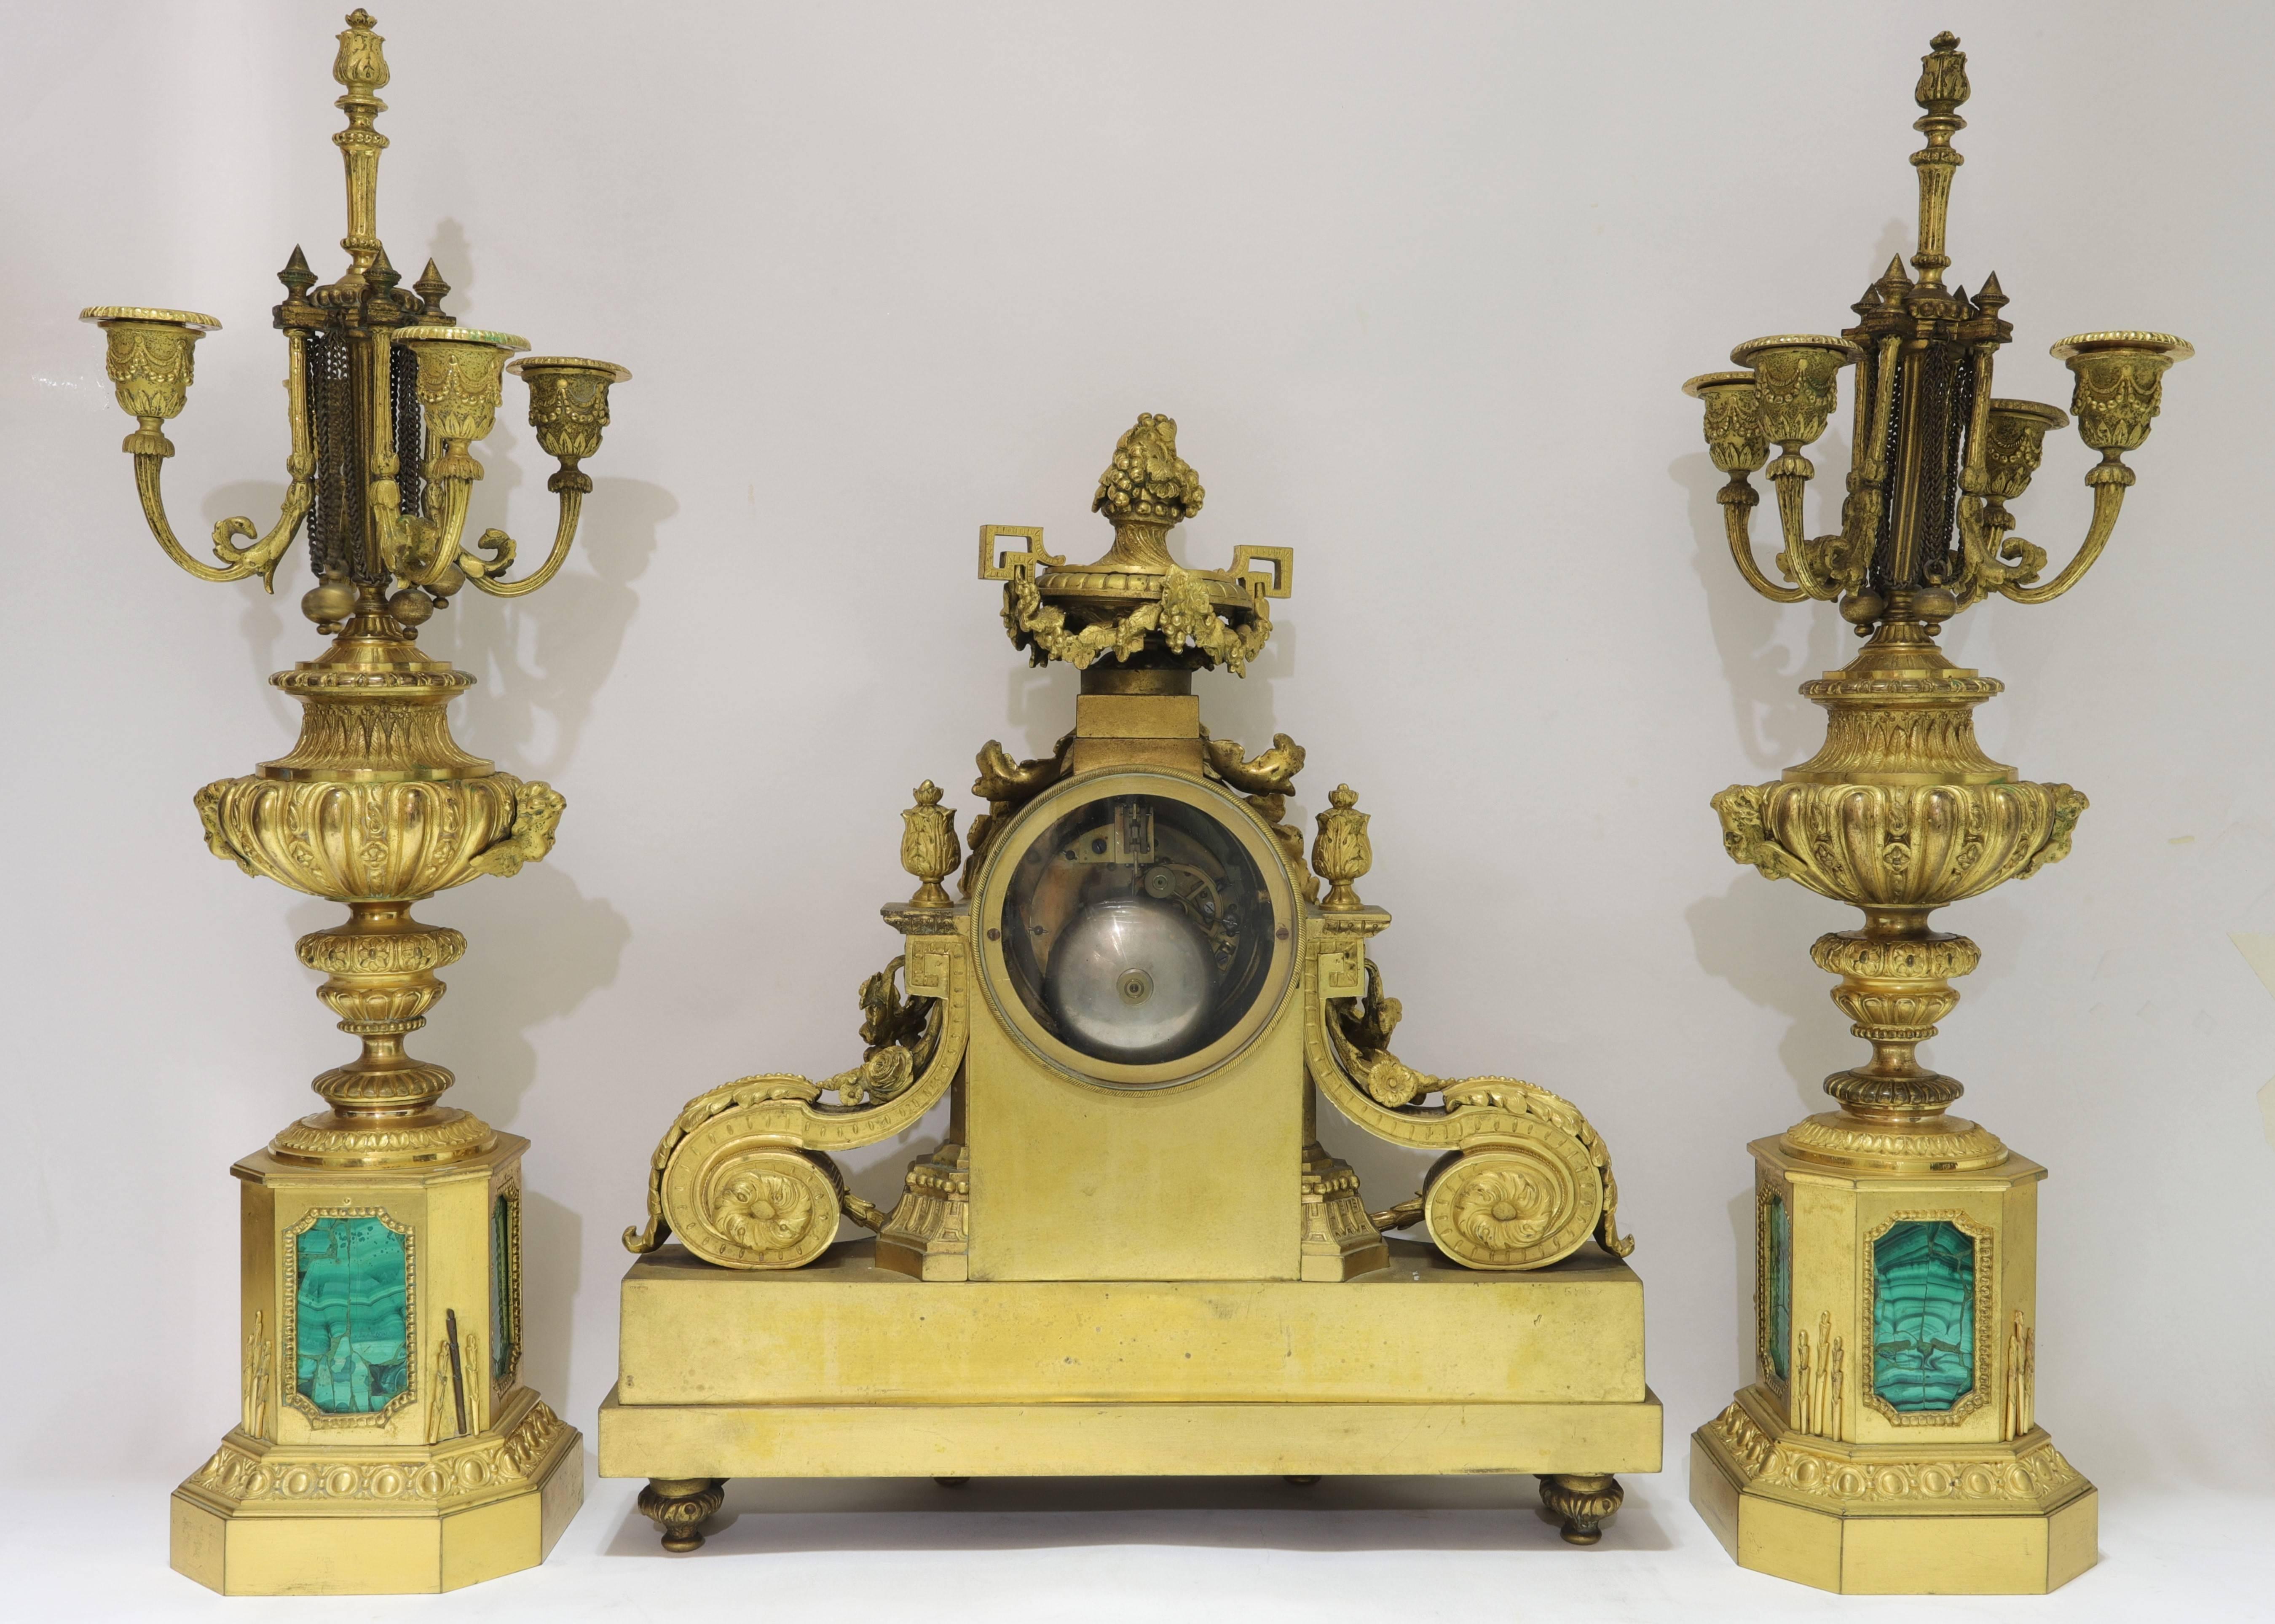 Ensemble de pendules et de candélabres de style Louis XVI de très belle qualité en bronze doré et malachite, composé de trois pièces.
Le cadran est signé 